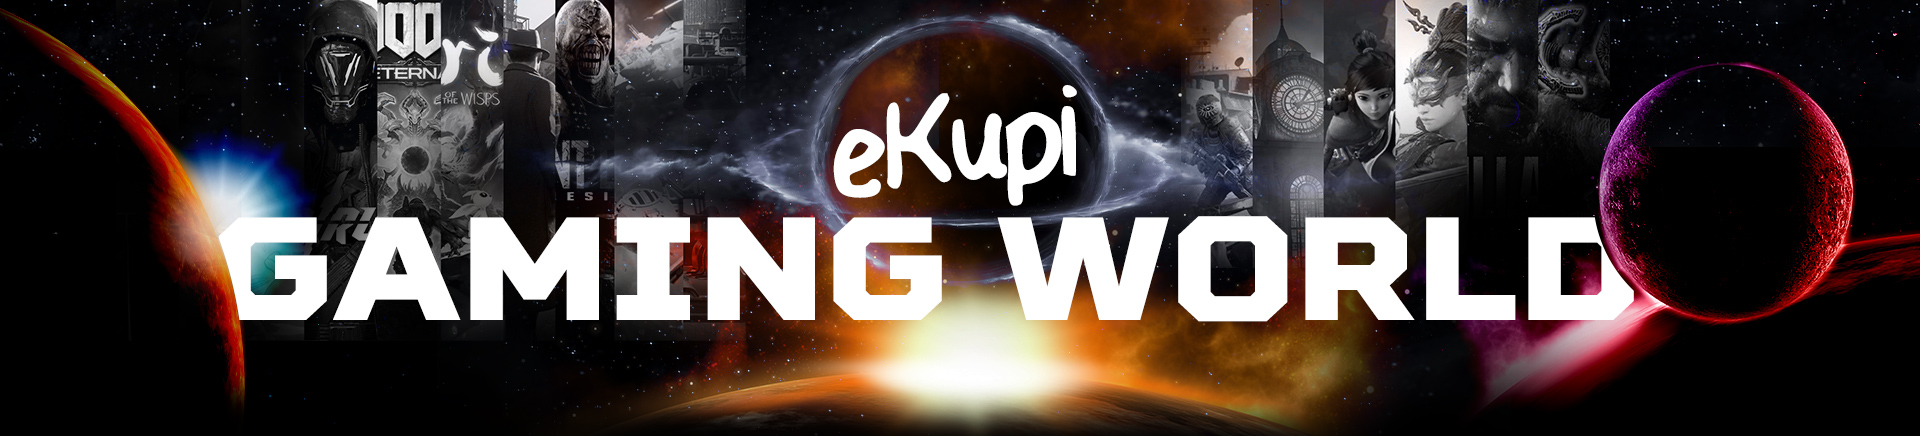 eKupi Gaming world